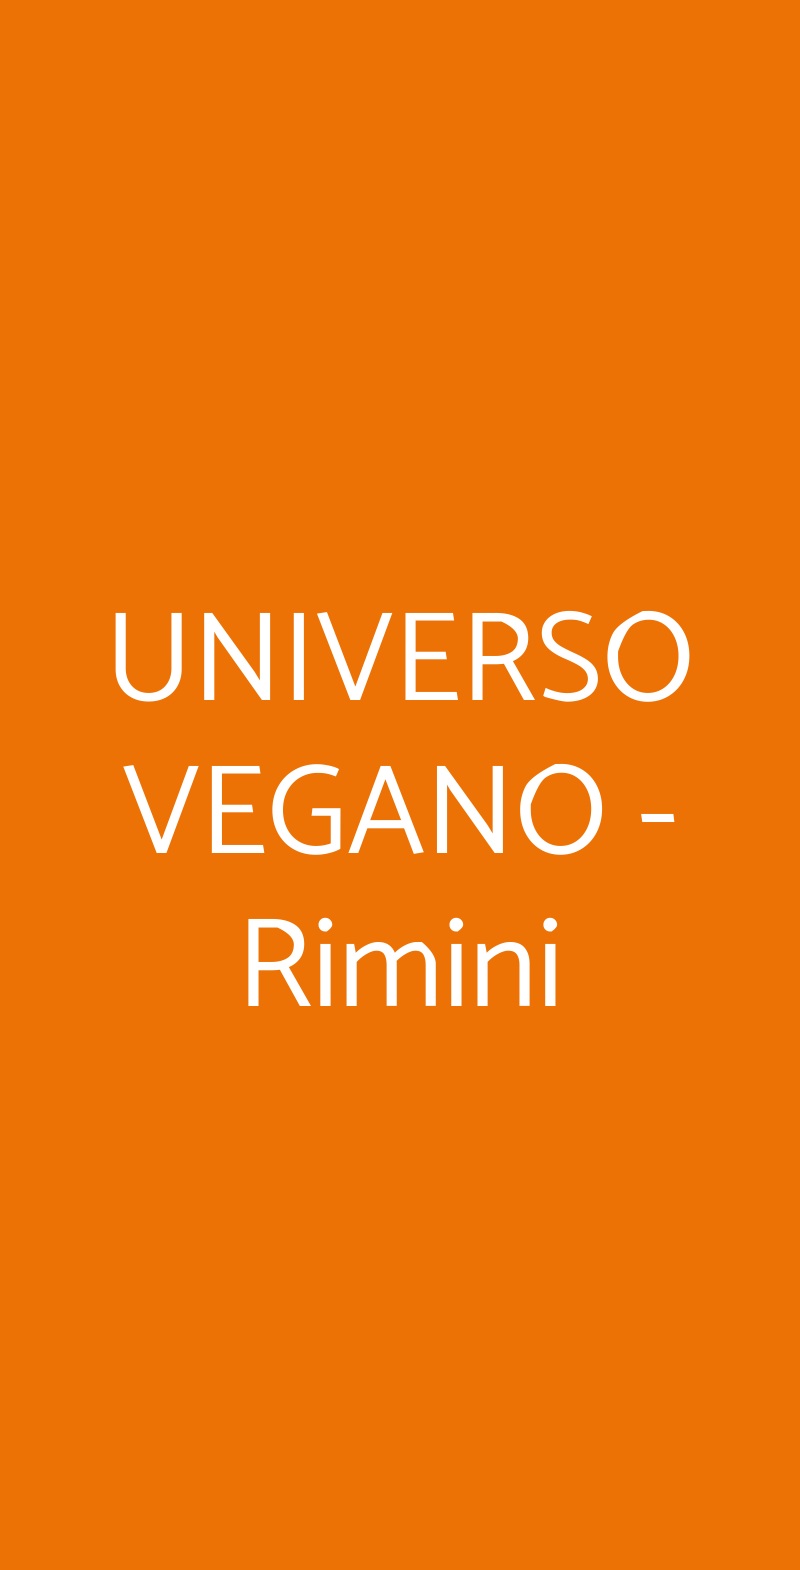 UNIVERSO VEGANO - Rimini Rimini menù 1 pagina